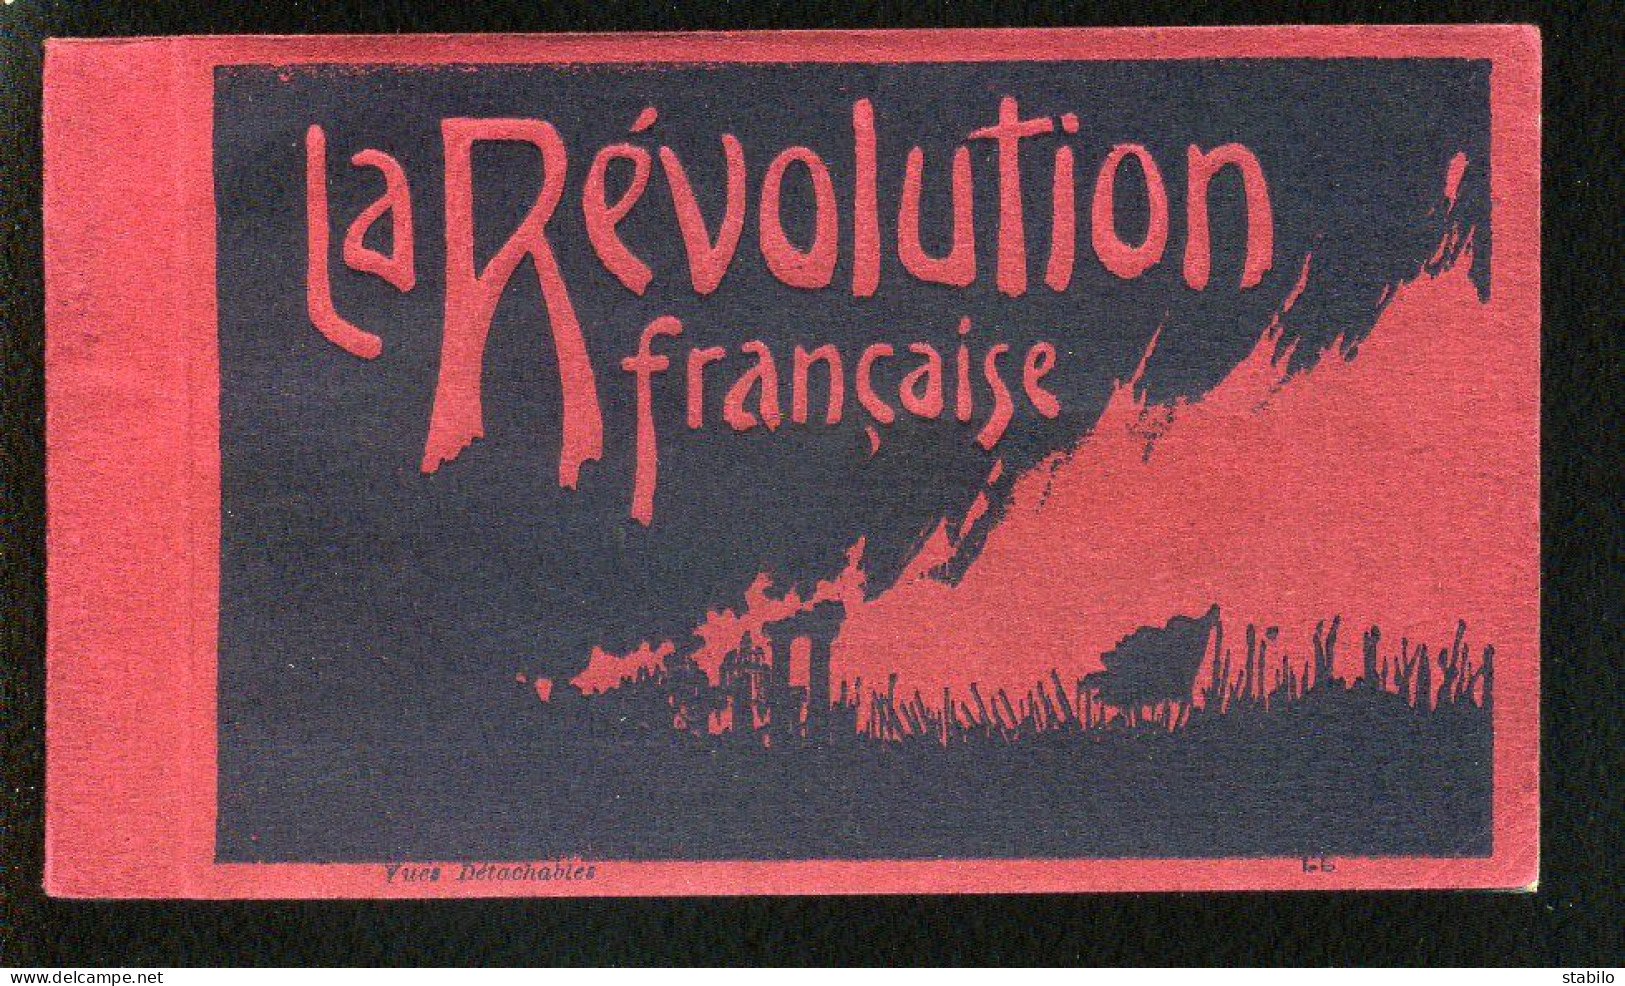 LA REVOLUTION FRANCAISE - TABLEAUX - CARNET DE 19 CARTES FORMAT 9X14  - Histoire